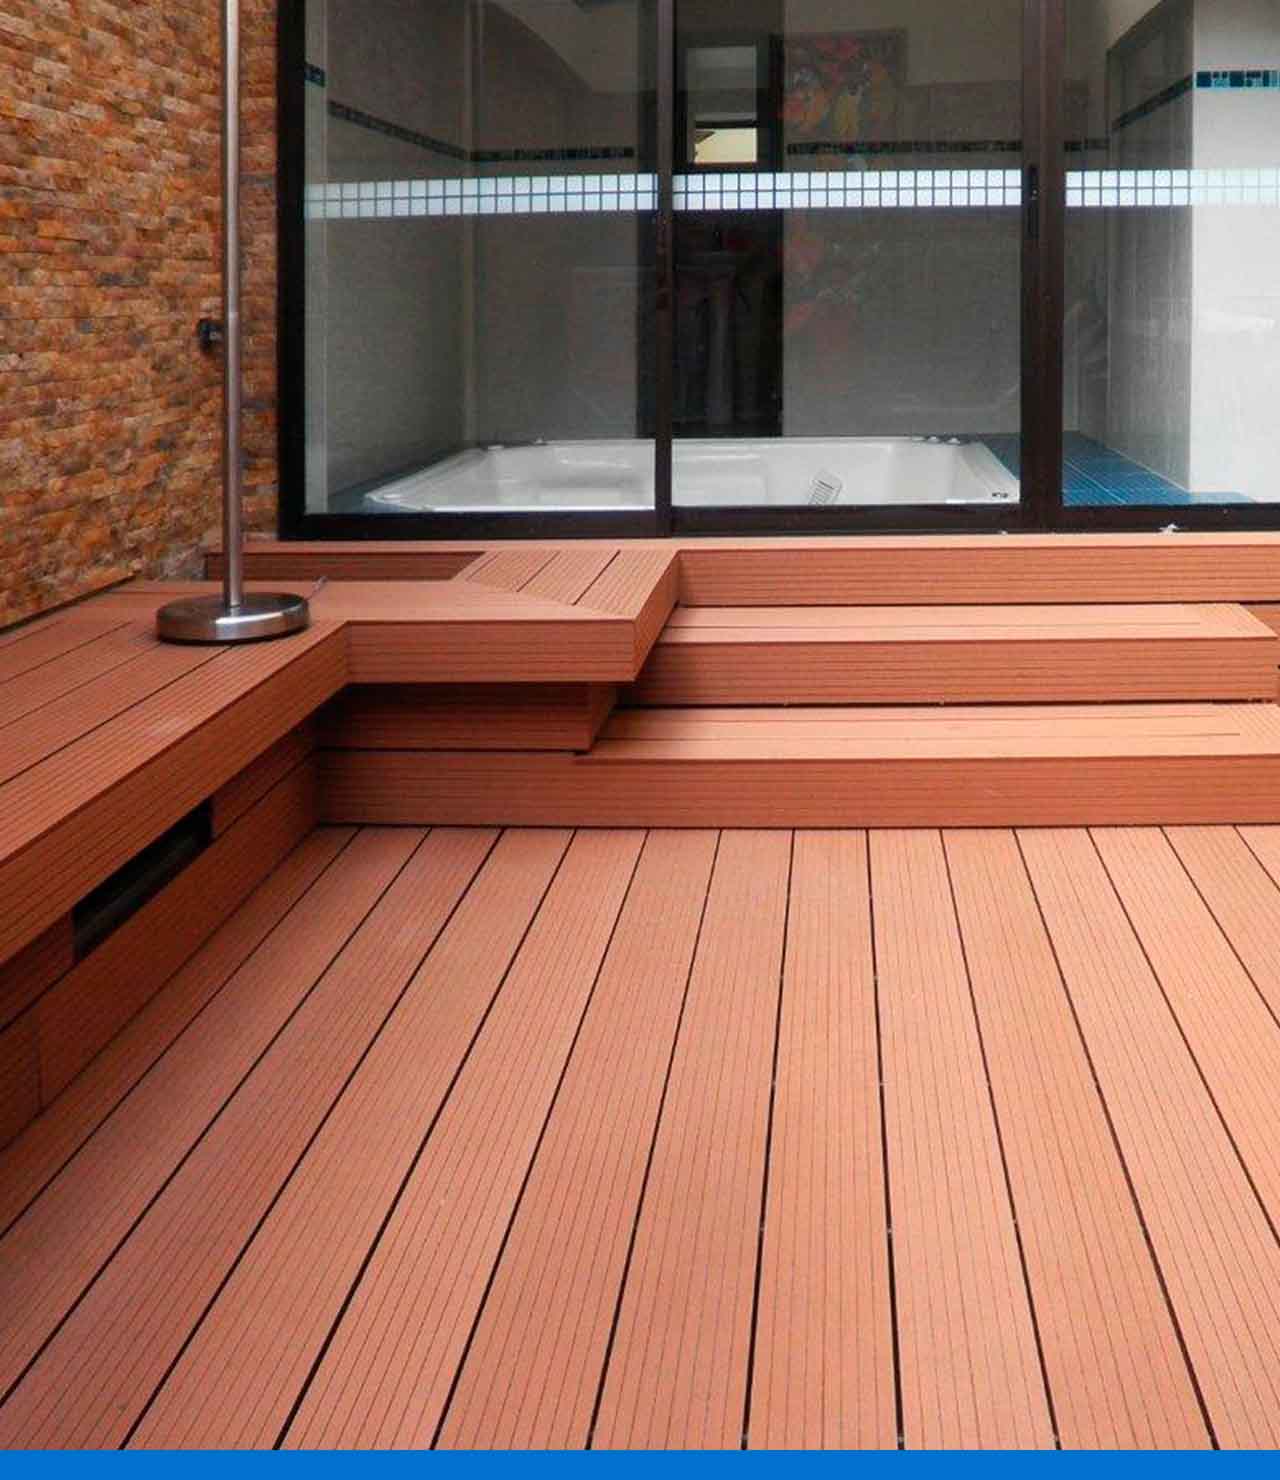 Espacio exterior cubierto con tablones de madera